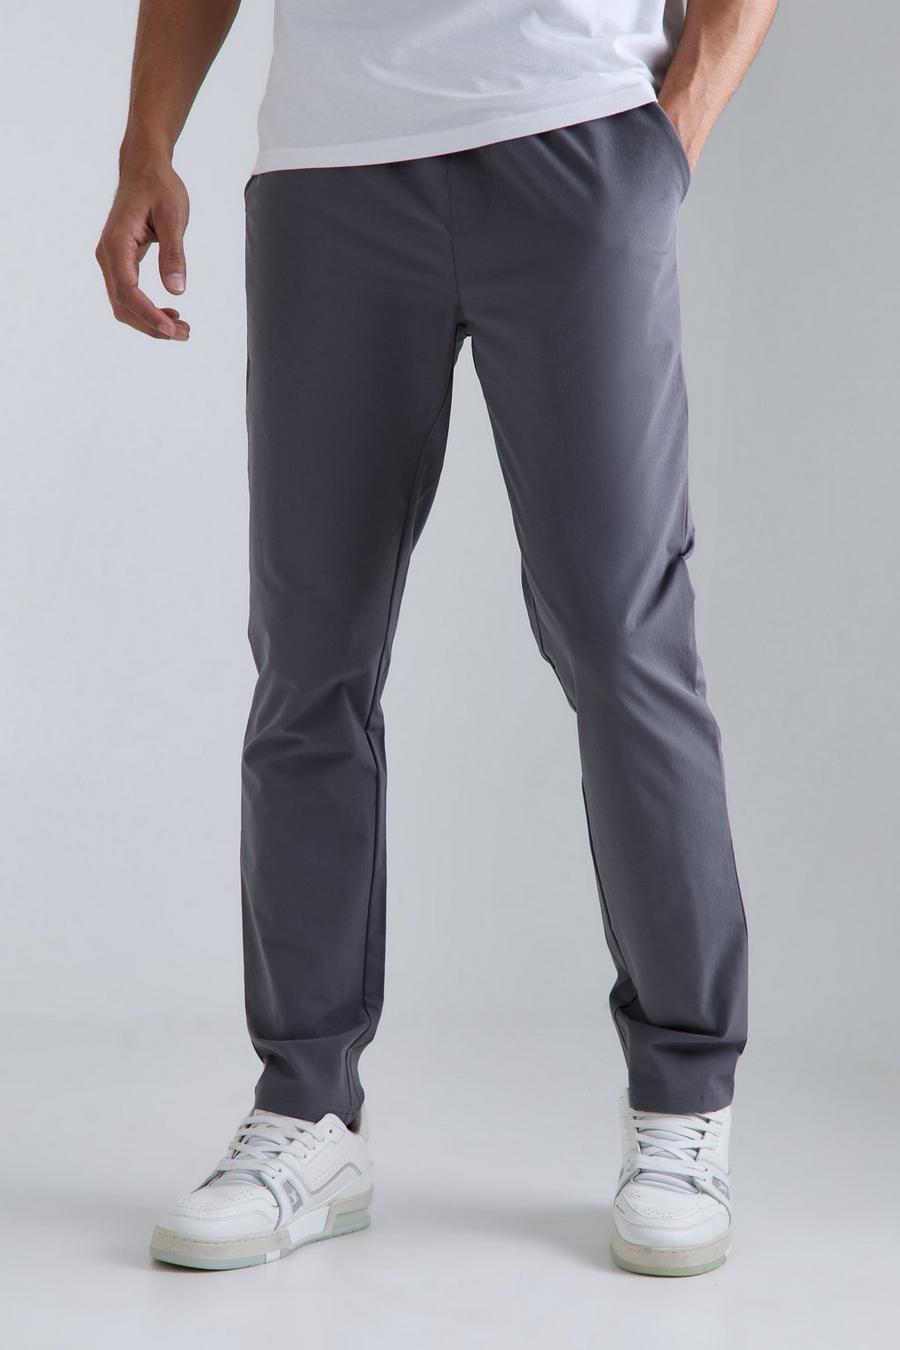 Pantaloni Slim Fit in Stretch tecnico leggero con vita elasticizzata, Charcoal